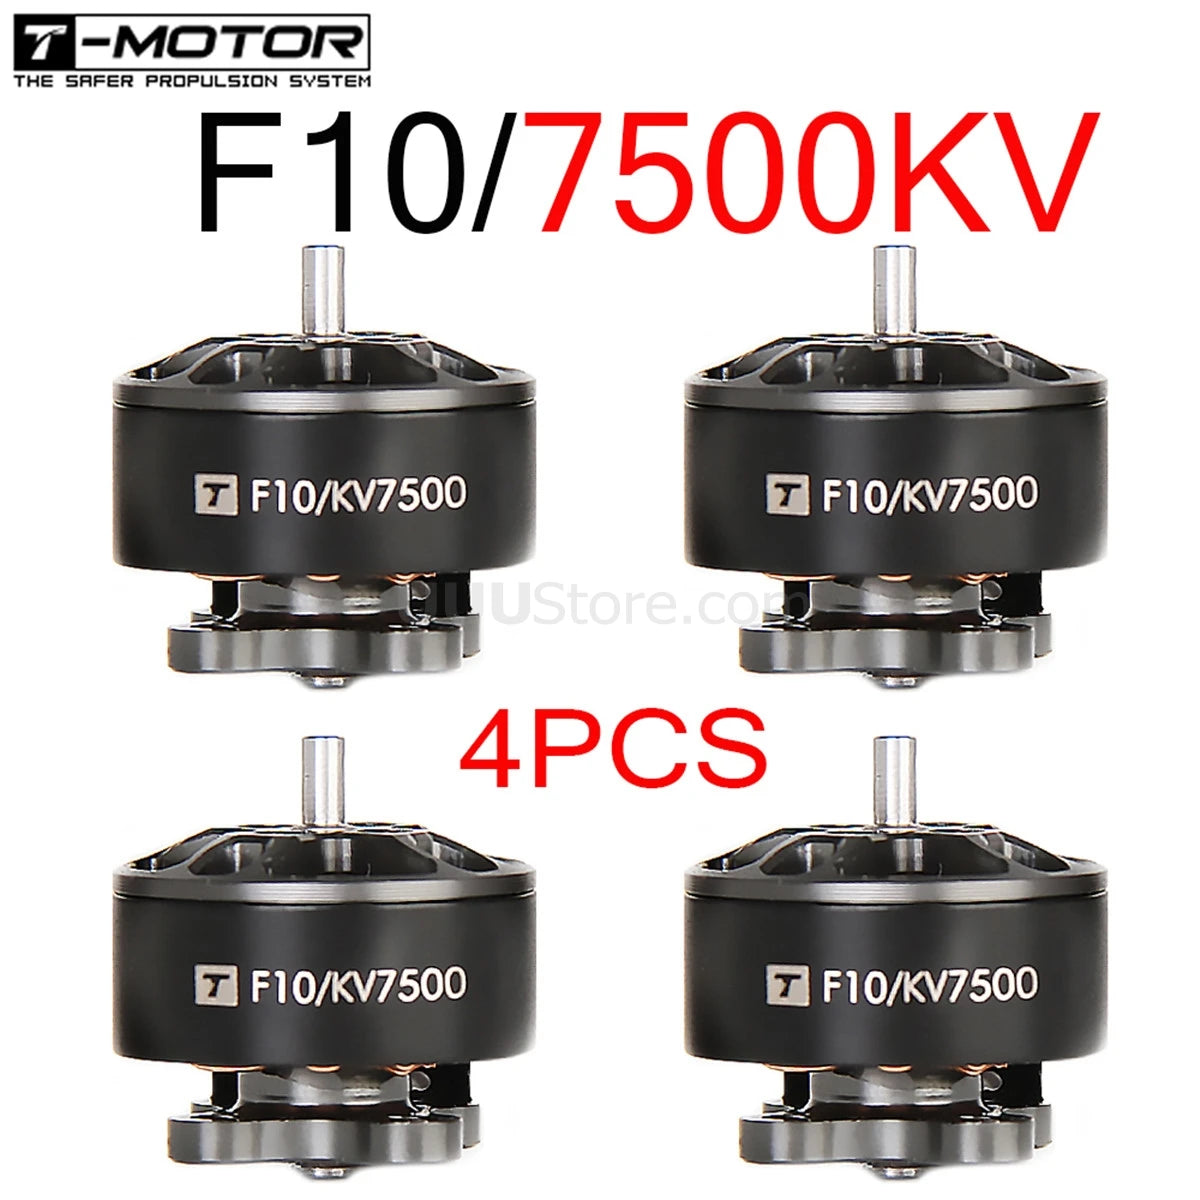 1/2/4PCS T-MOTOR, SAfer PROPULSION SYSTEM F10/750Kv FIO/